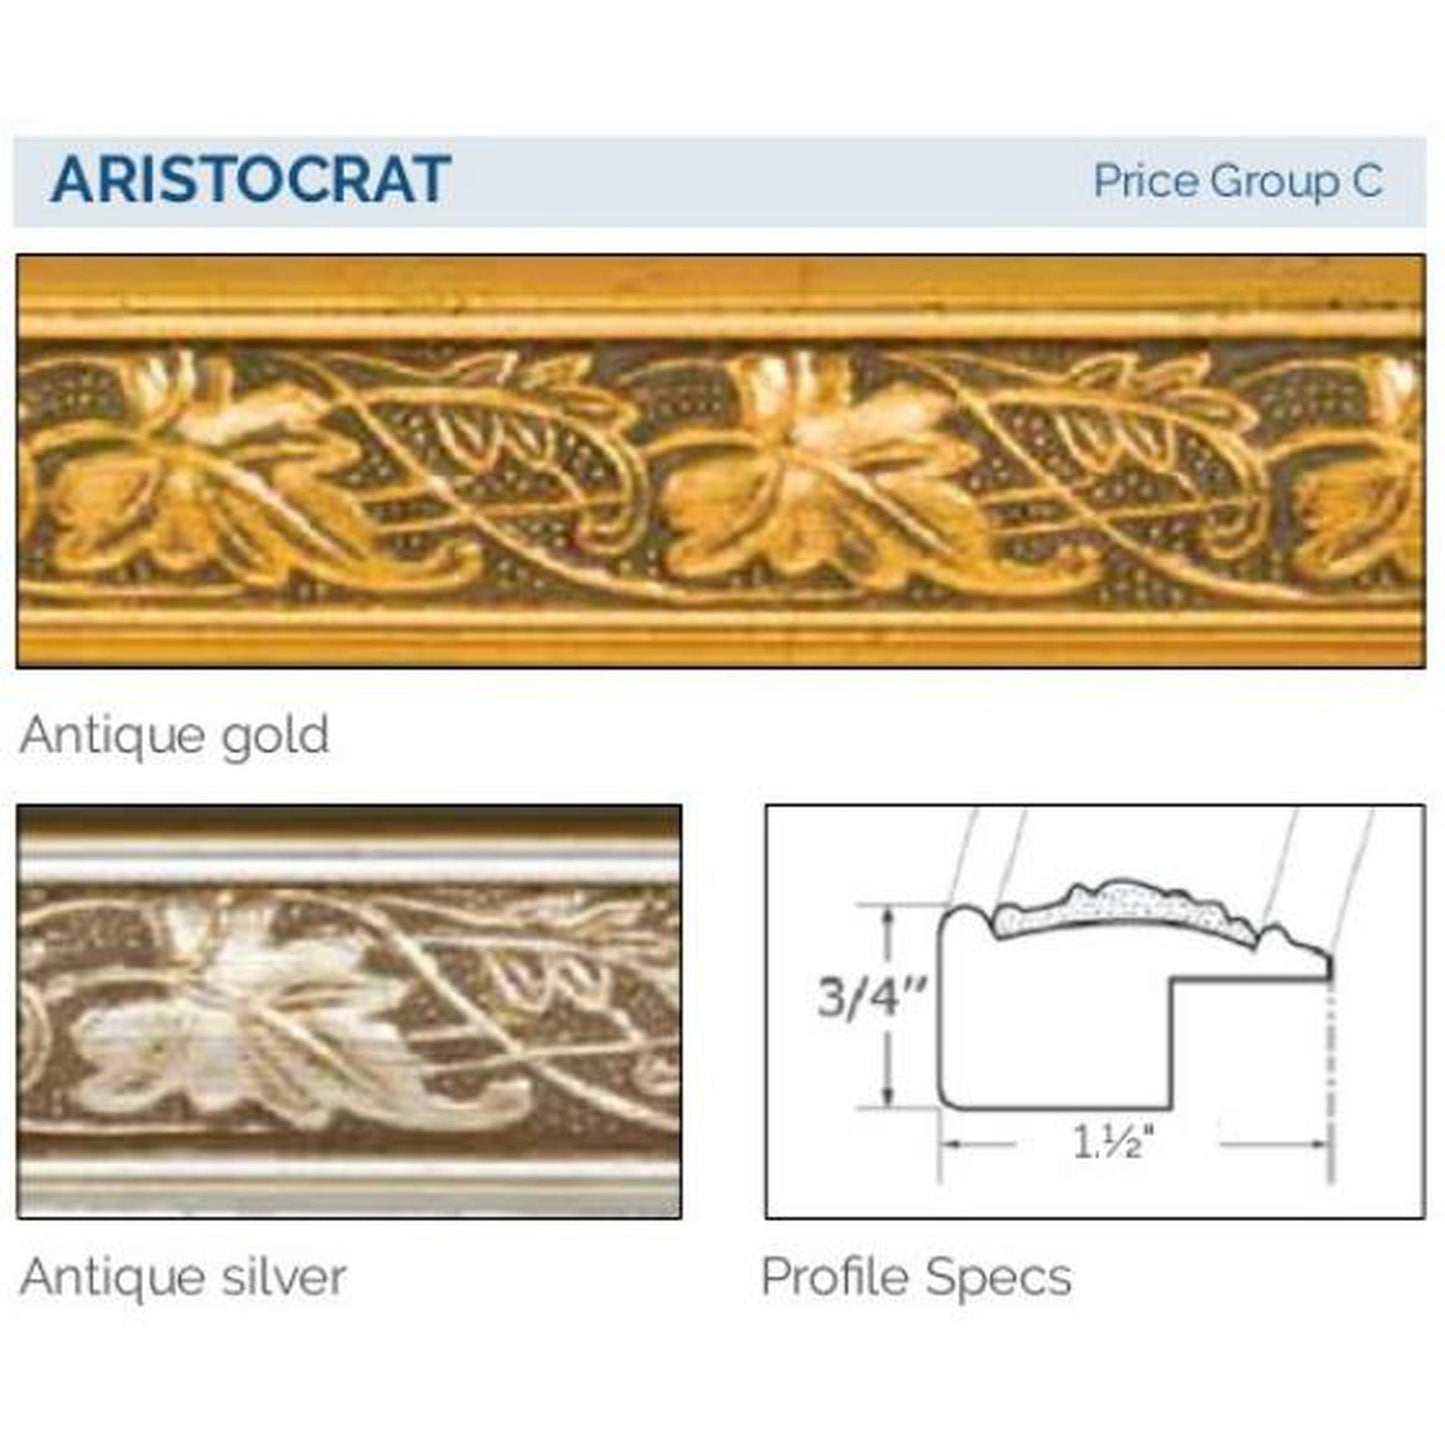 Afina Signature 27" x 21" Aristocrat Antique Silver Recessed Retro-Fit Double Door Medicine Cabinet With Beveled Edge Mirror